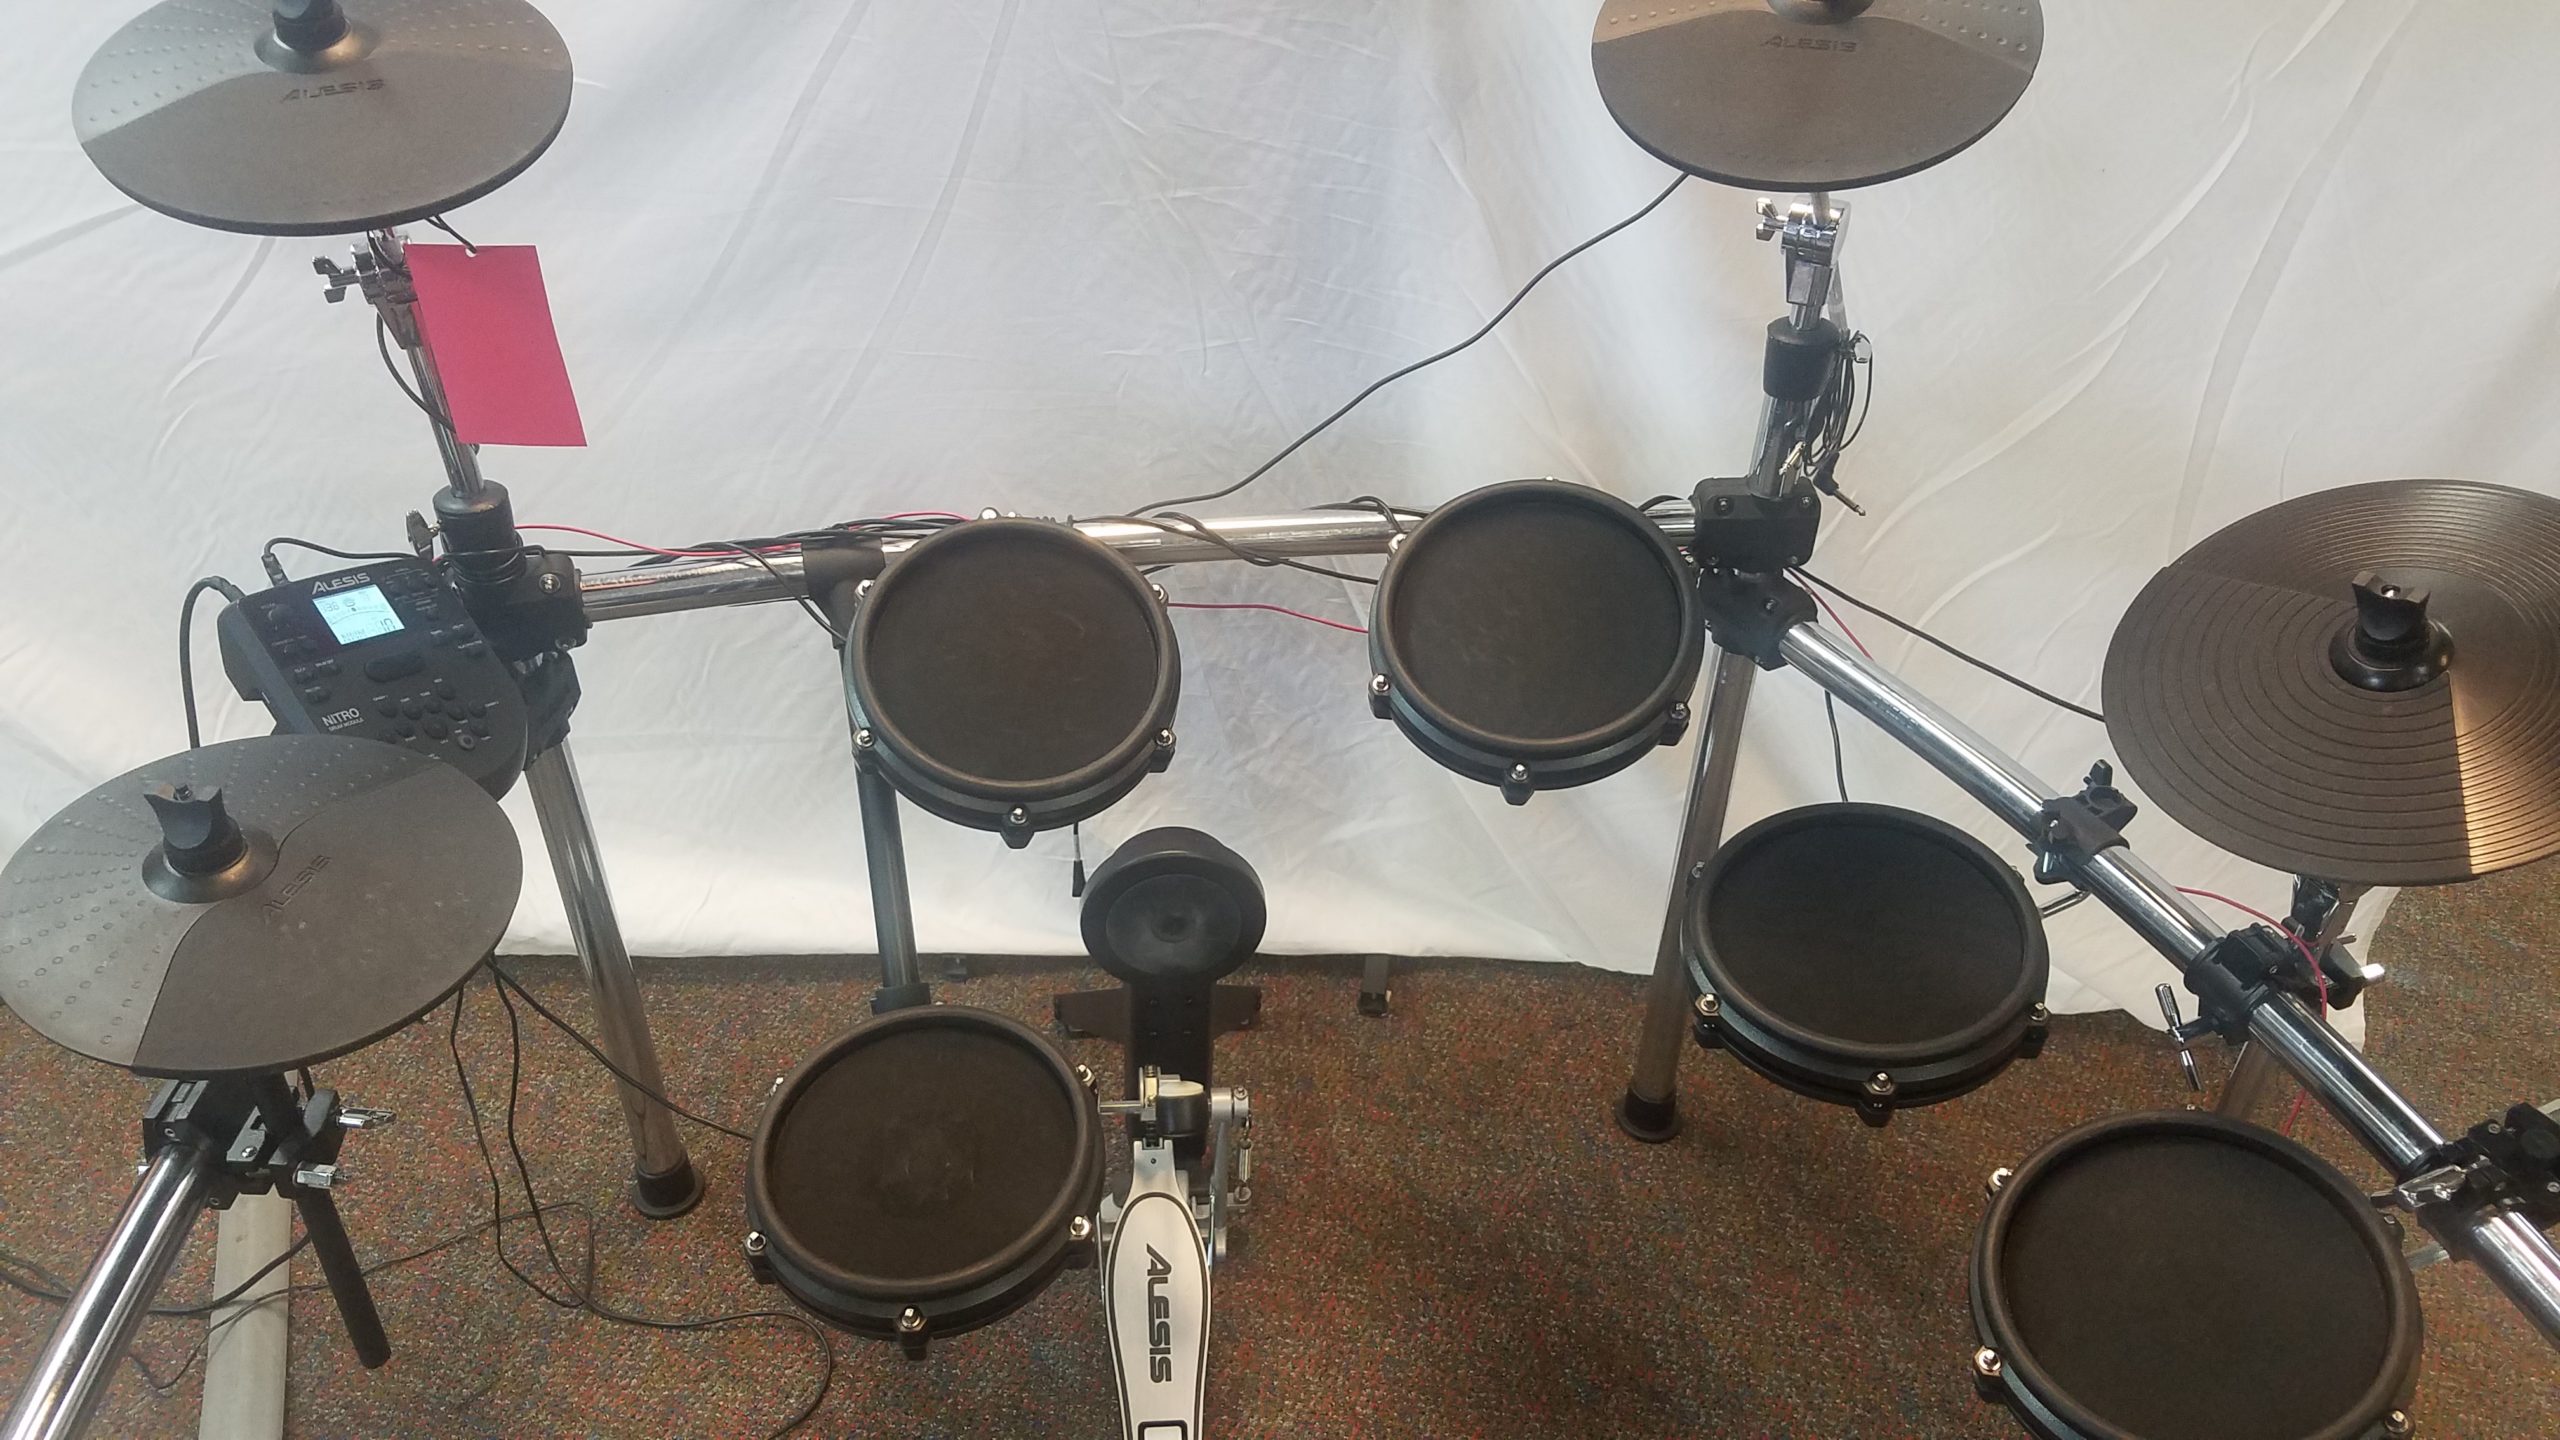 8bit drummer set